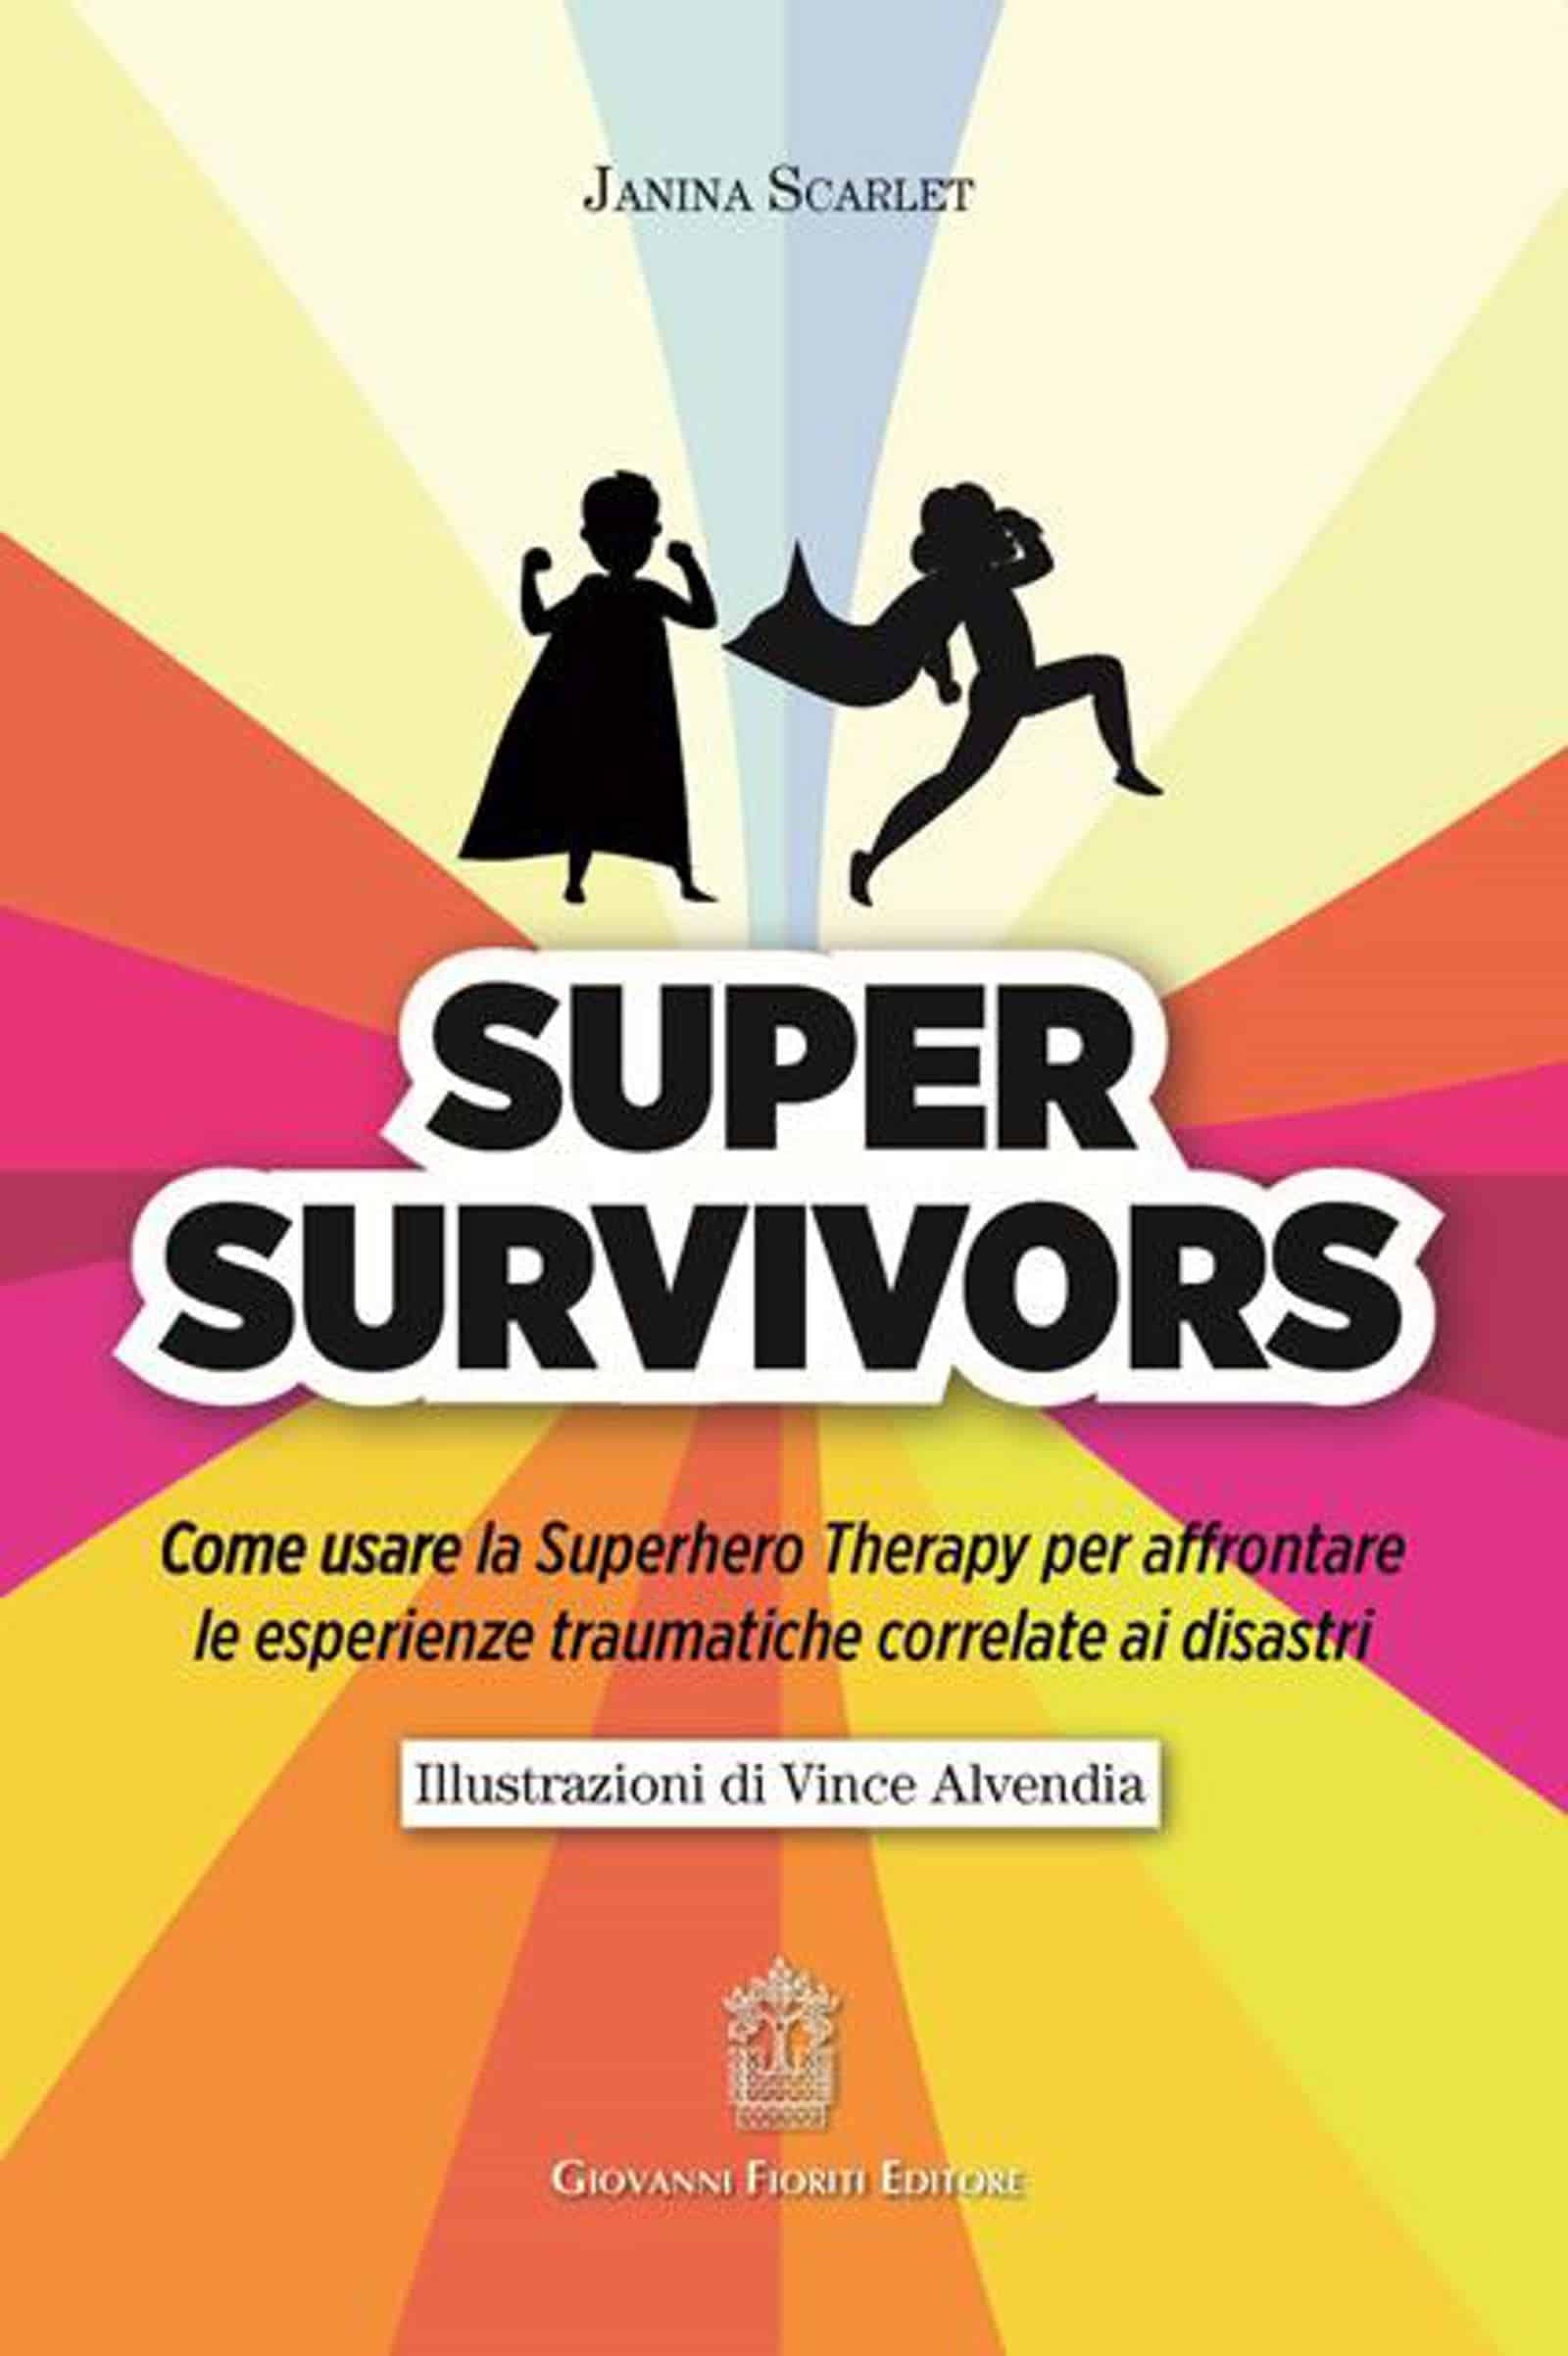 Super Survivors. Come usare la Superhero therapy per affrontare le esperienze traumatiche correlate ai disastri (2021) di Janina Scarlet – Recensione del testo